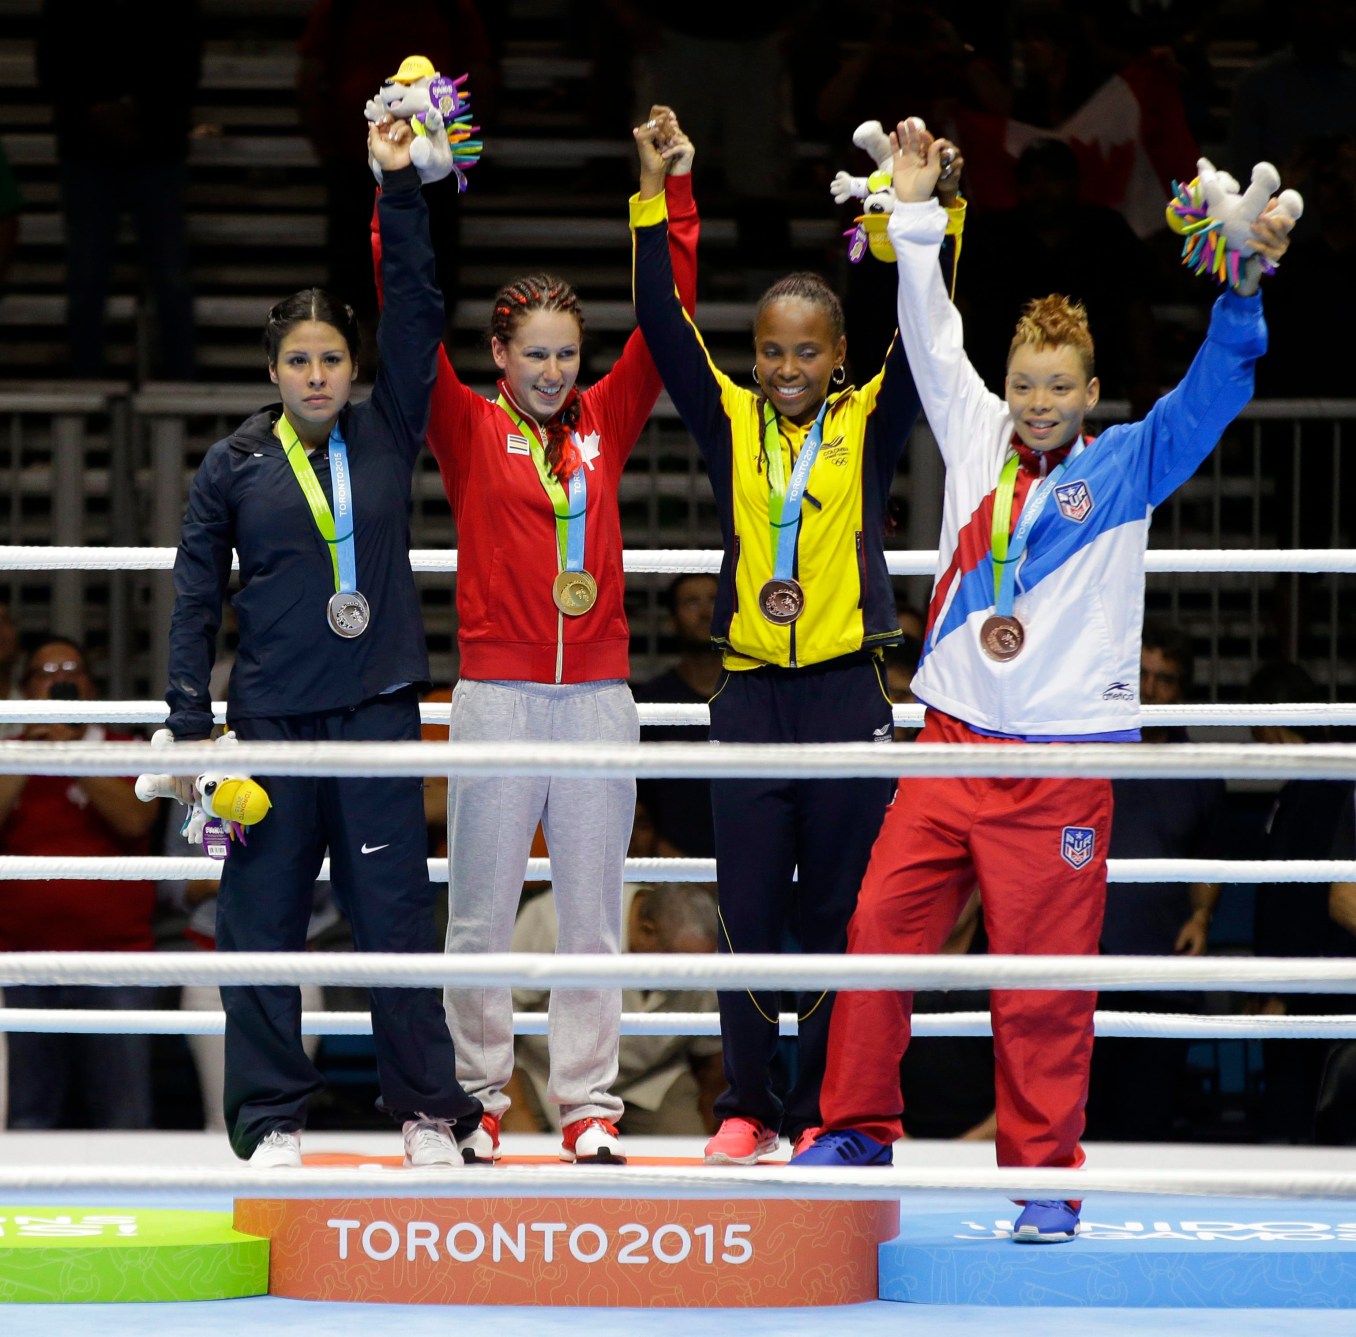 Mandy Bujold (deuxième à droite) célèbre sa médaille d'or remportée aux Jeux panaméricains de Toronto.